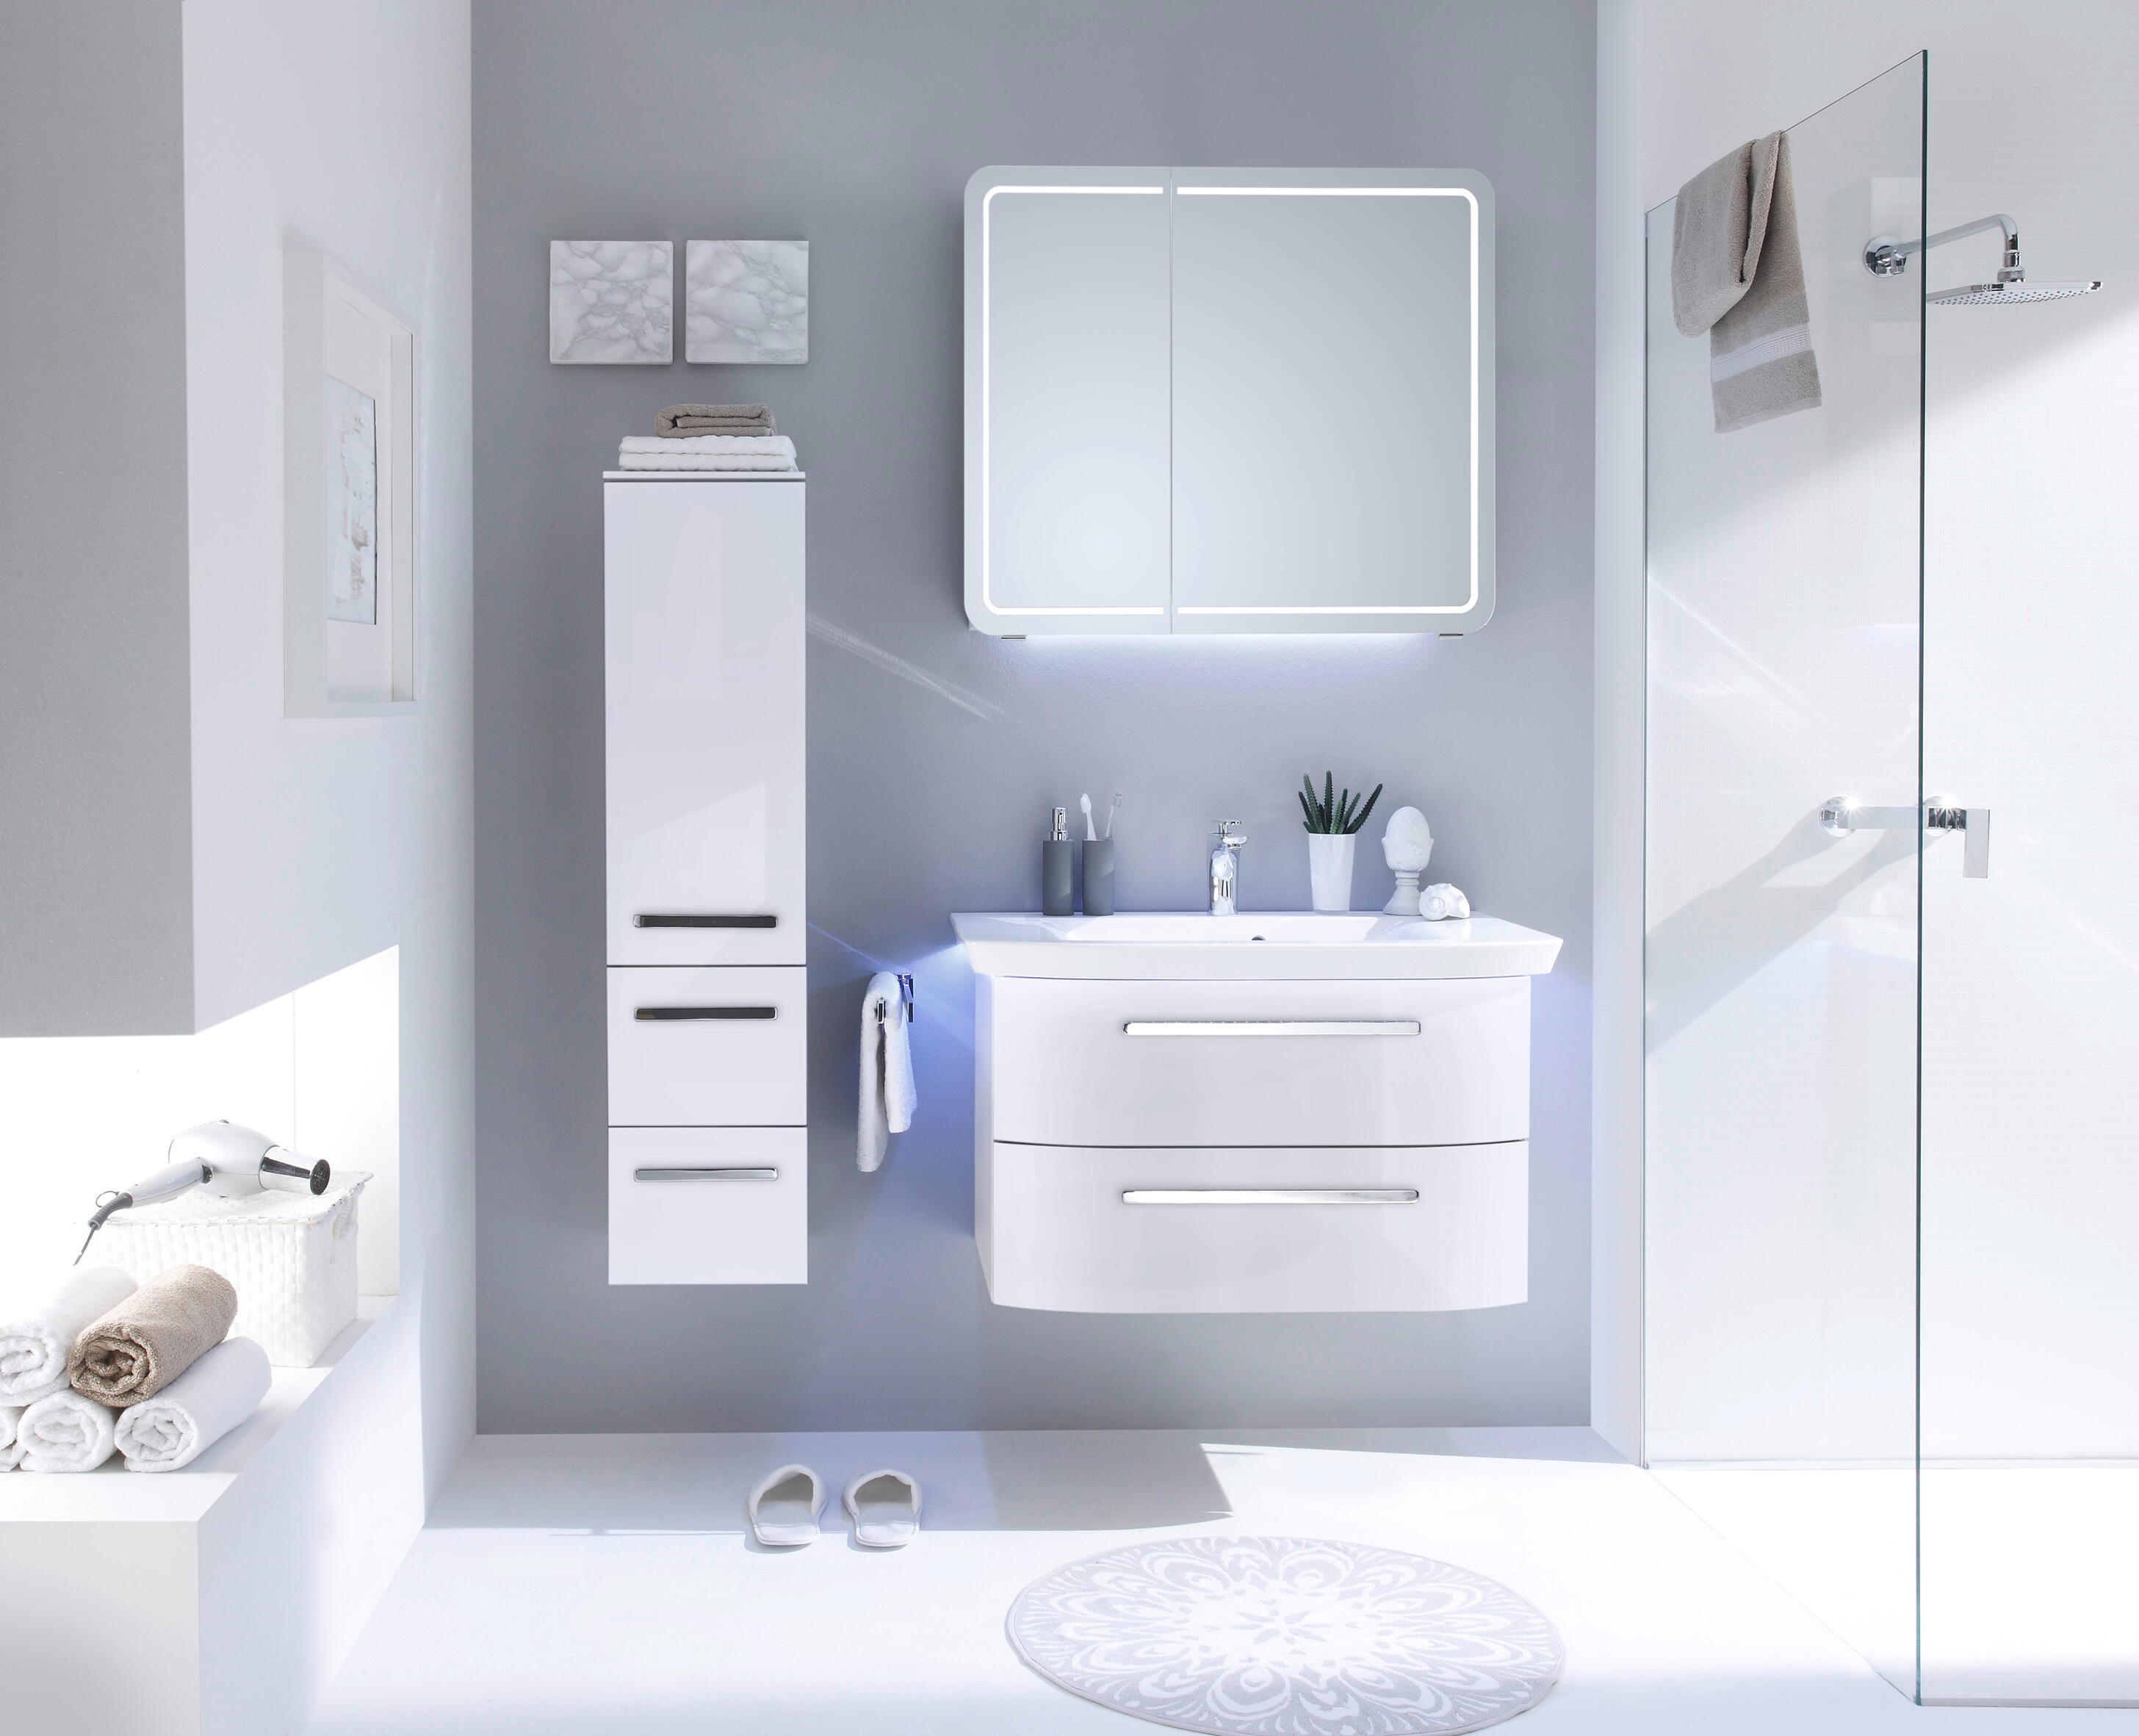 Mueble de baño con lavabo contea blanco 80x50 cm